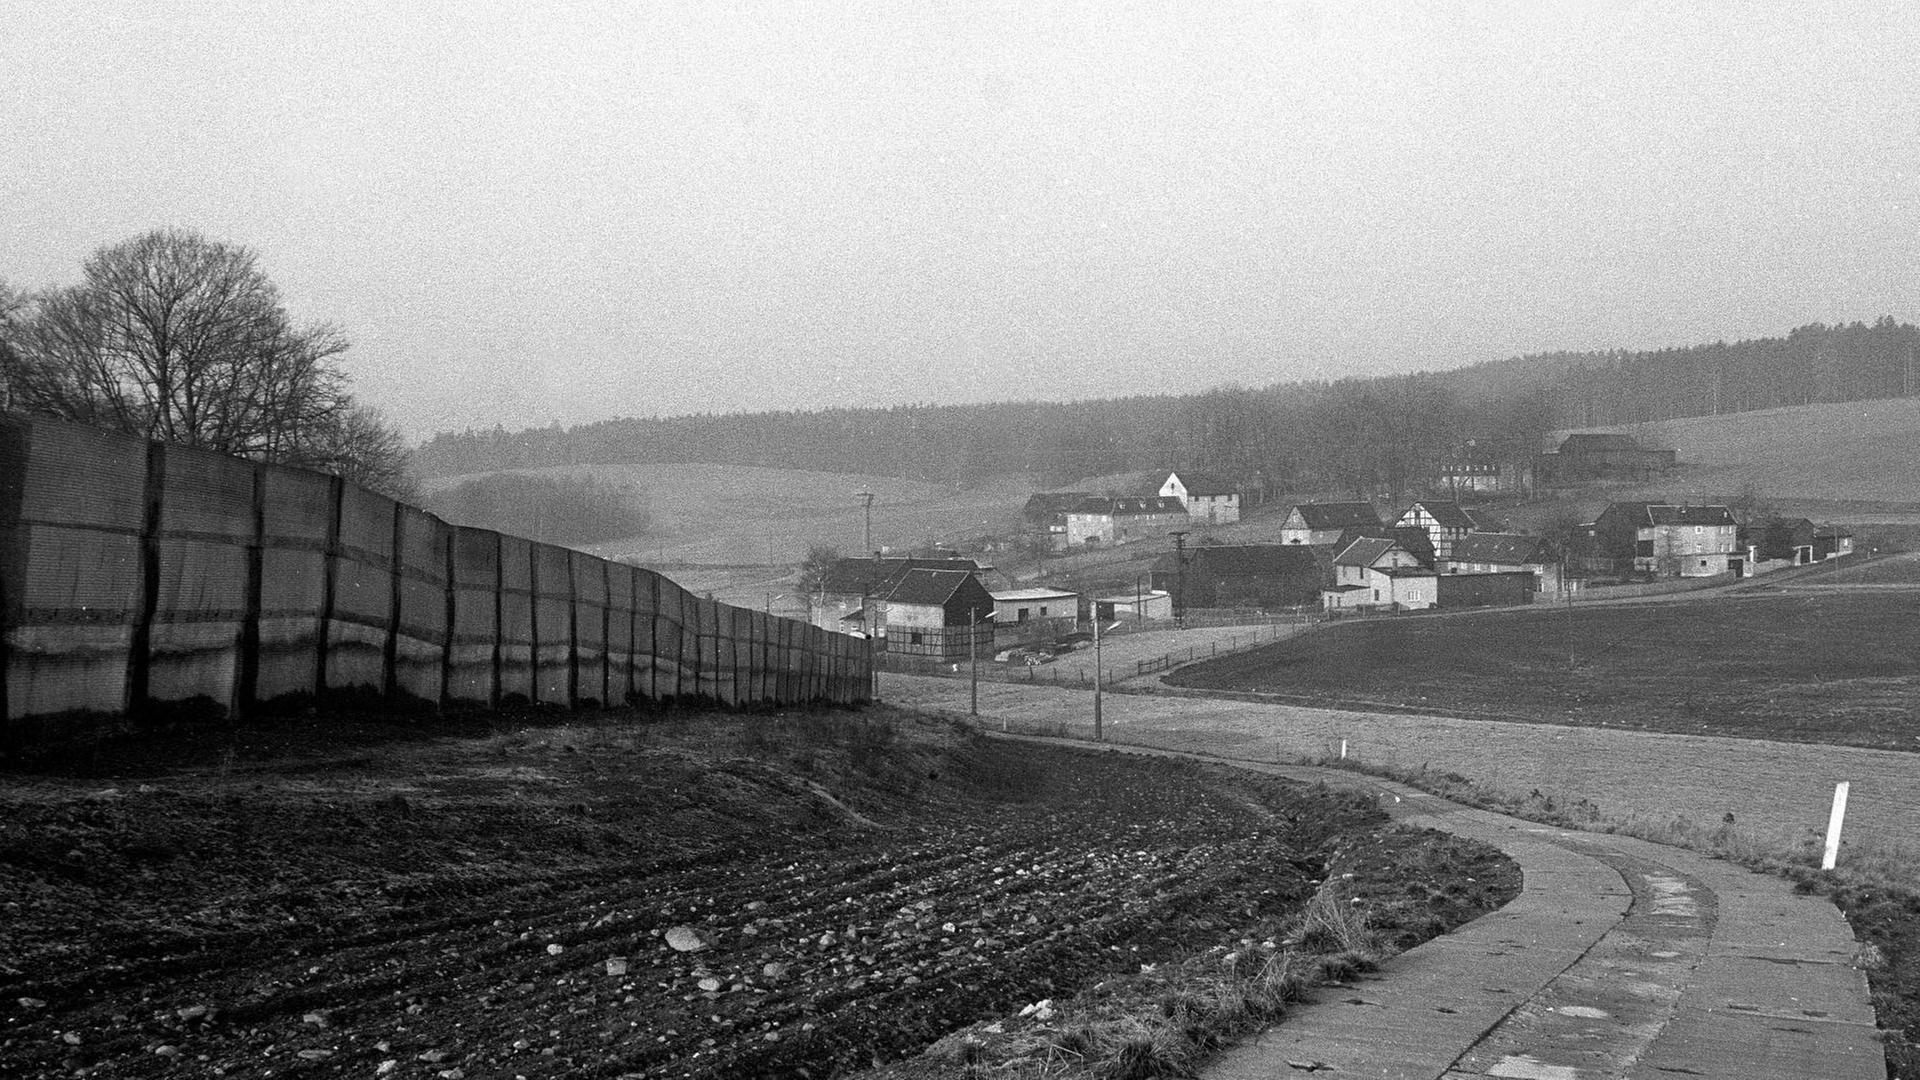 Schwarzaufnahme eines bayerischen Dorfes mit wenigen Häusern, unweit einer innerdeutschen Grenzanlage.